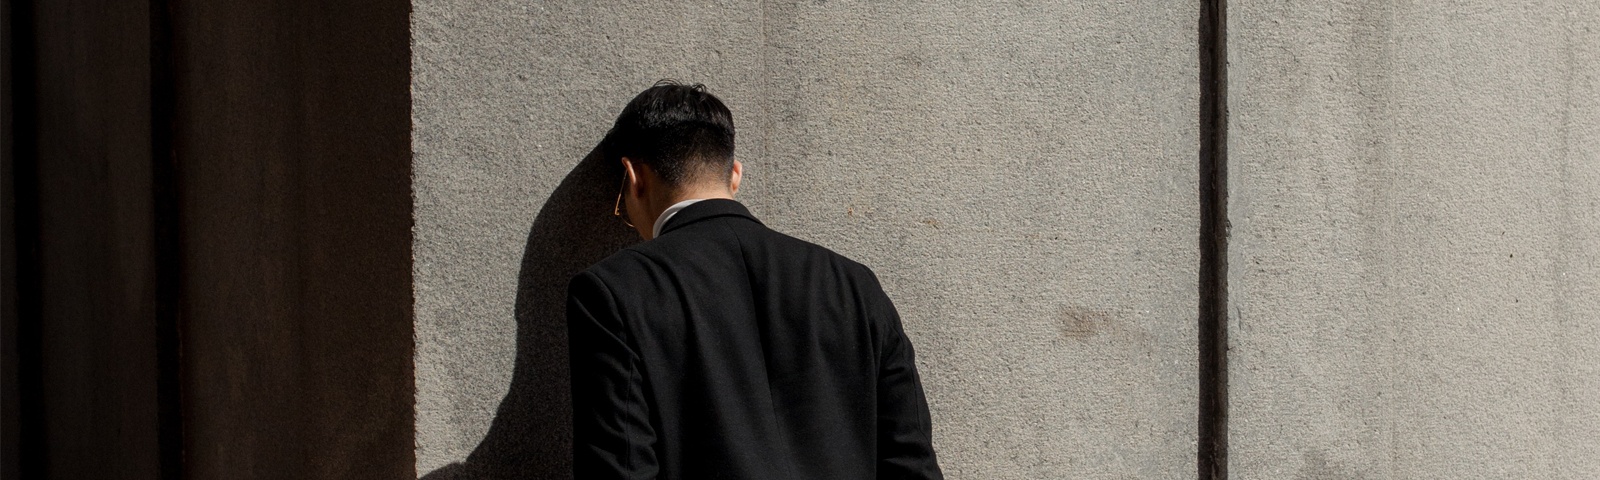 Bilden visar en svartklädd person som står med huvudet mot en vägg